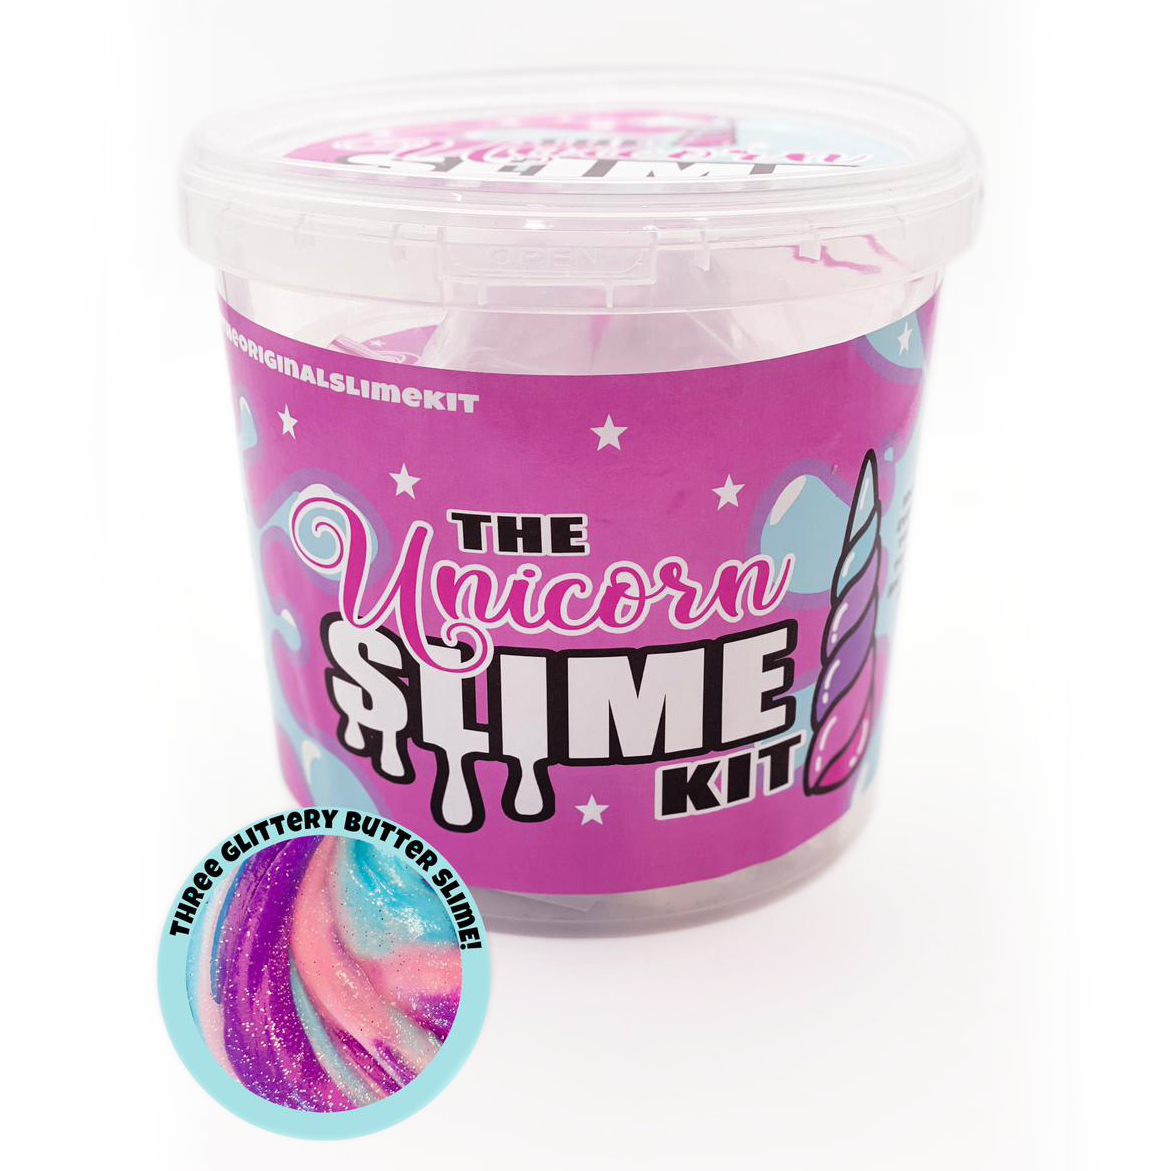 The Unicorn Slime Kit